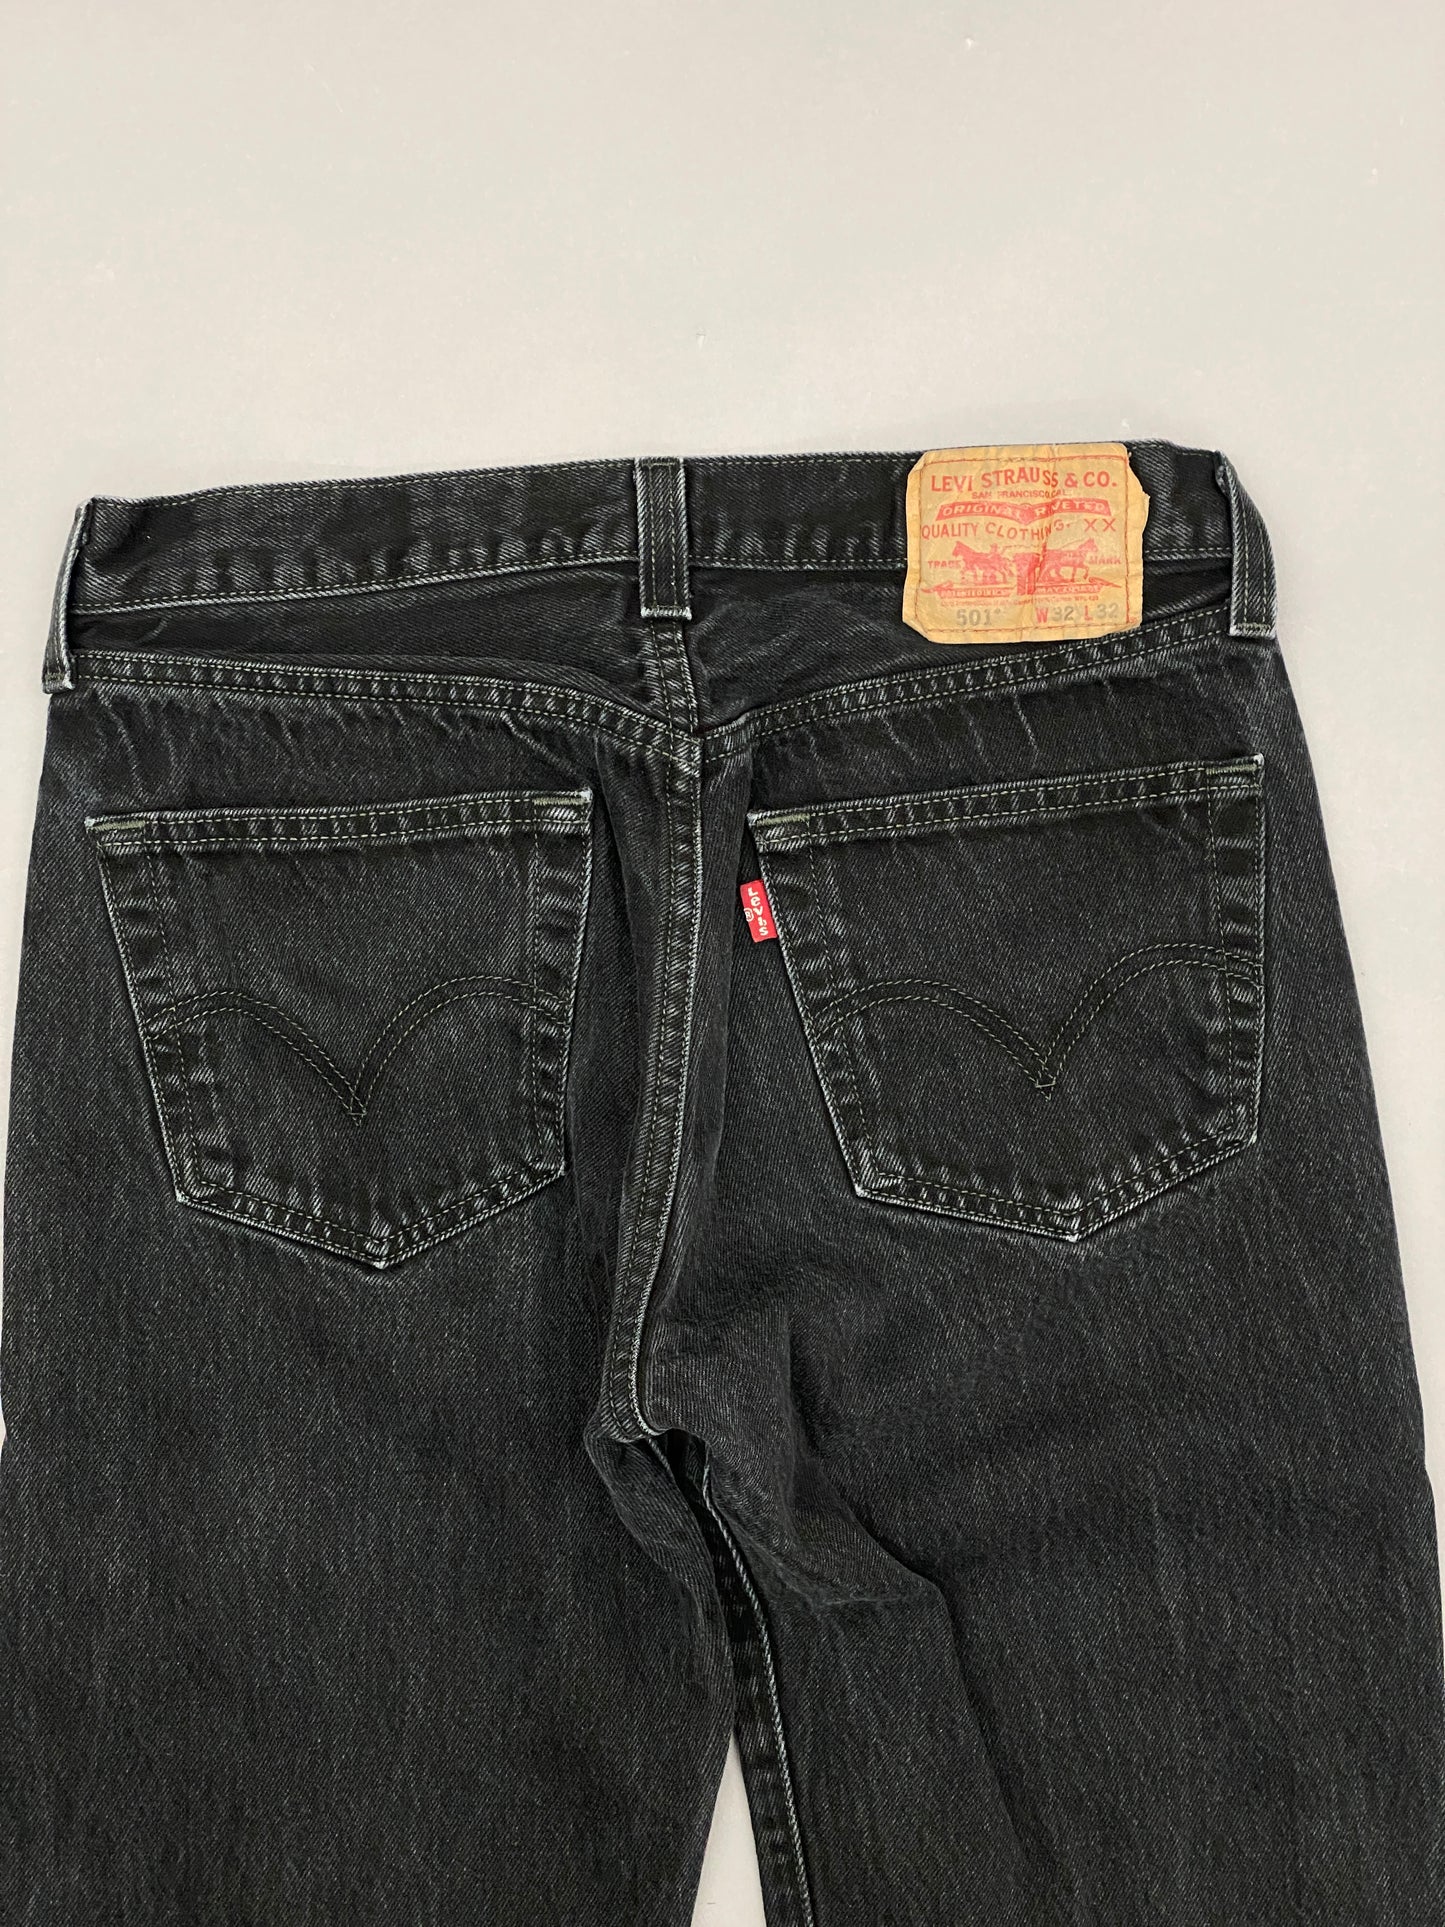 Levis 501 Vintage Jeans - 32x32